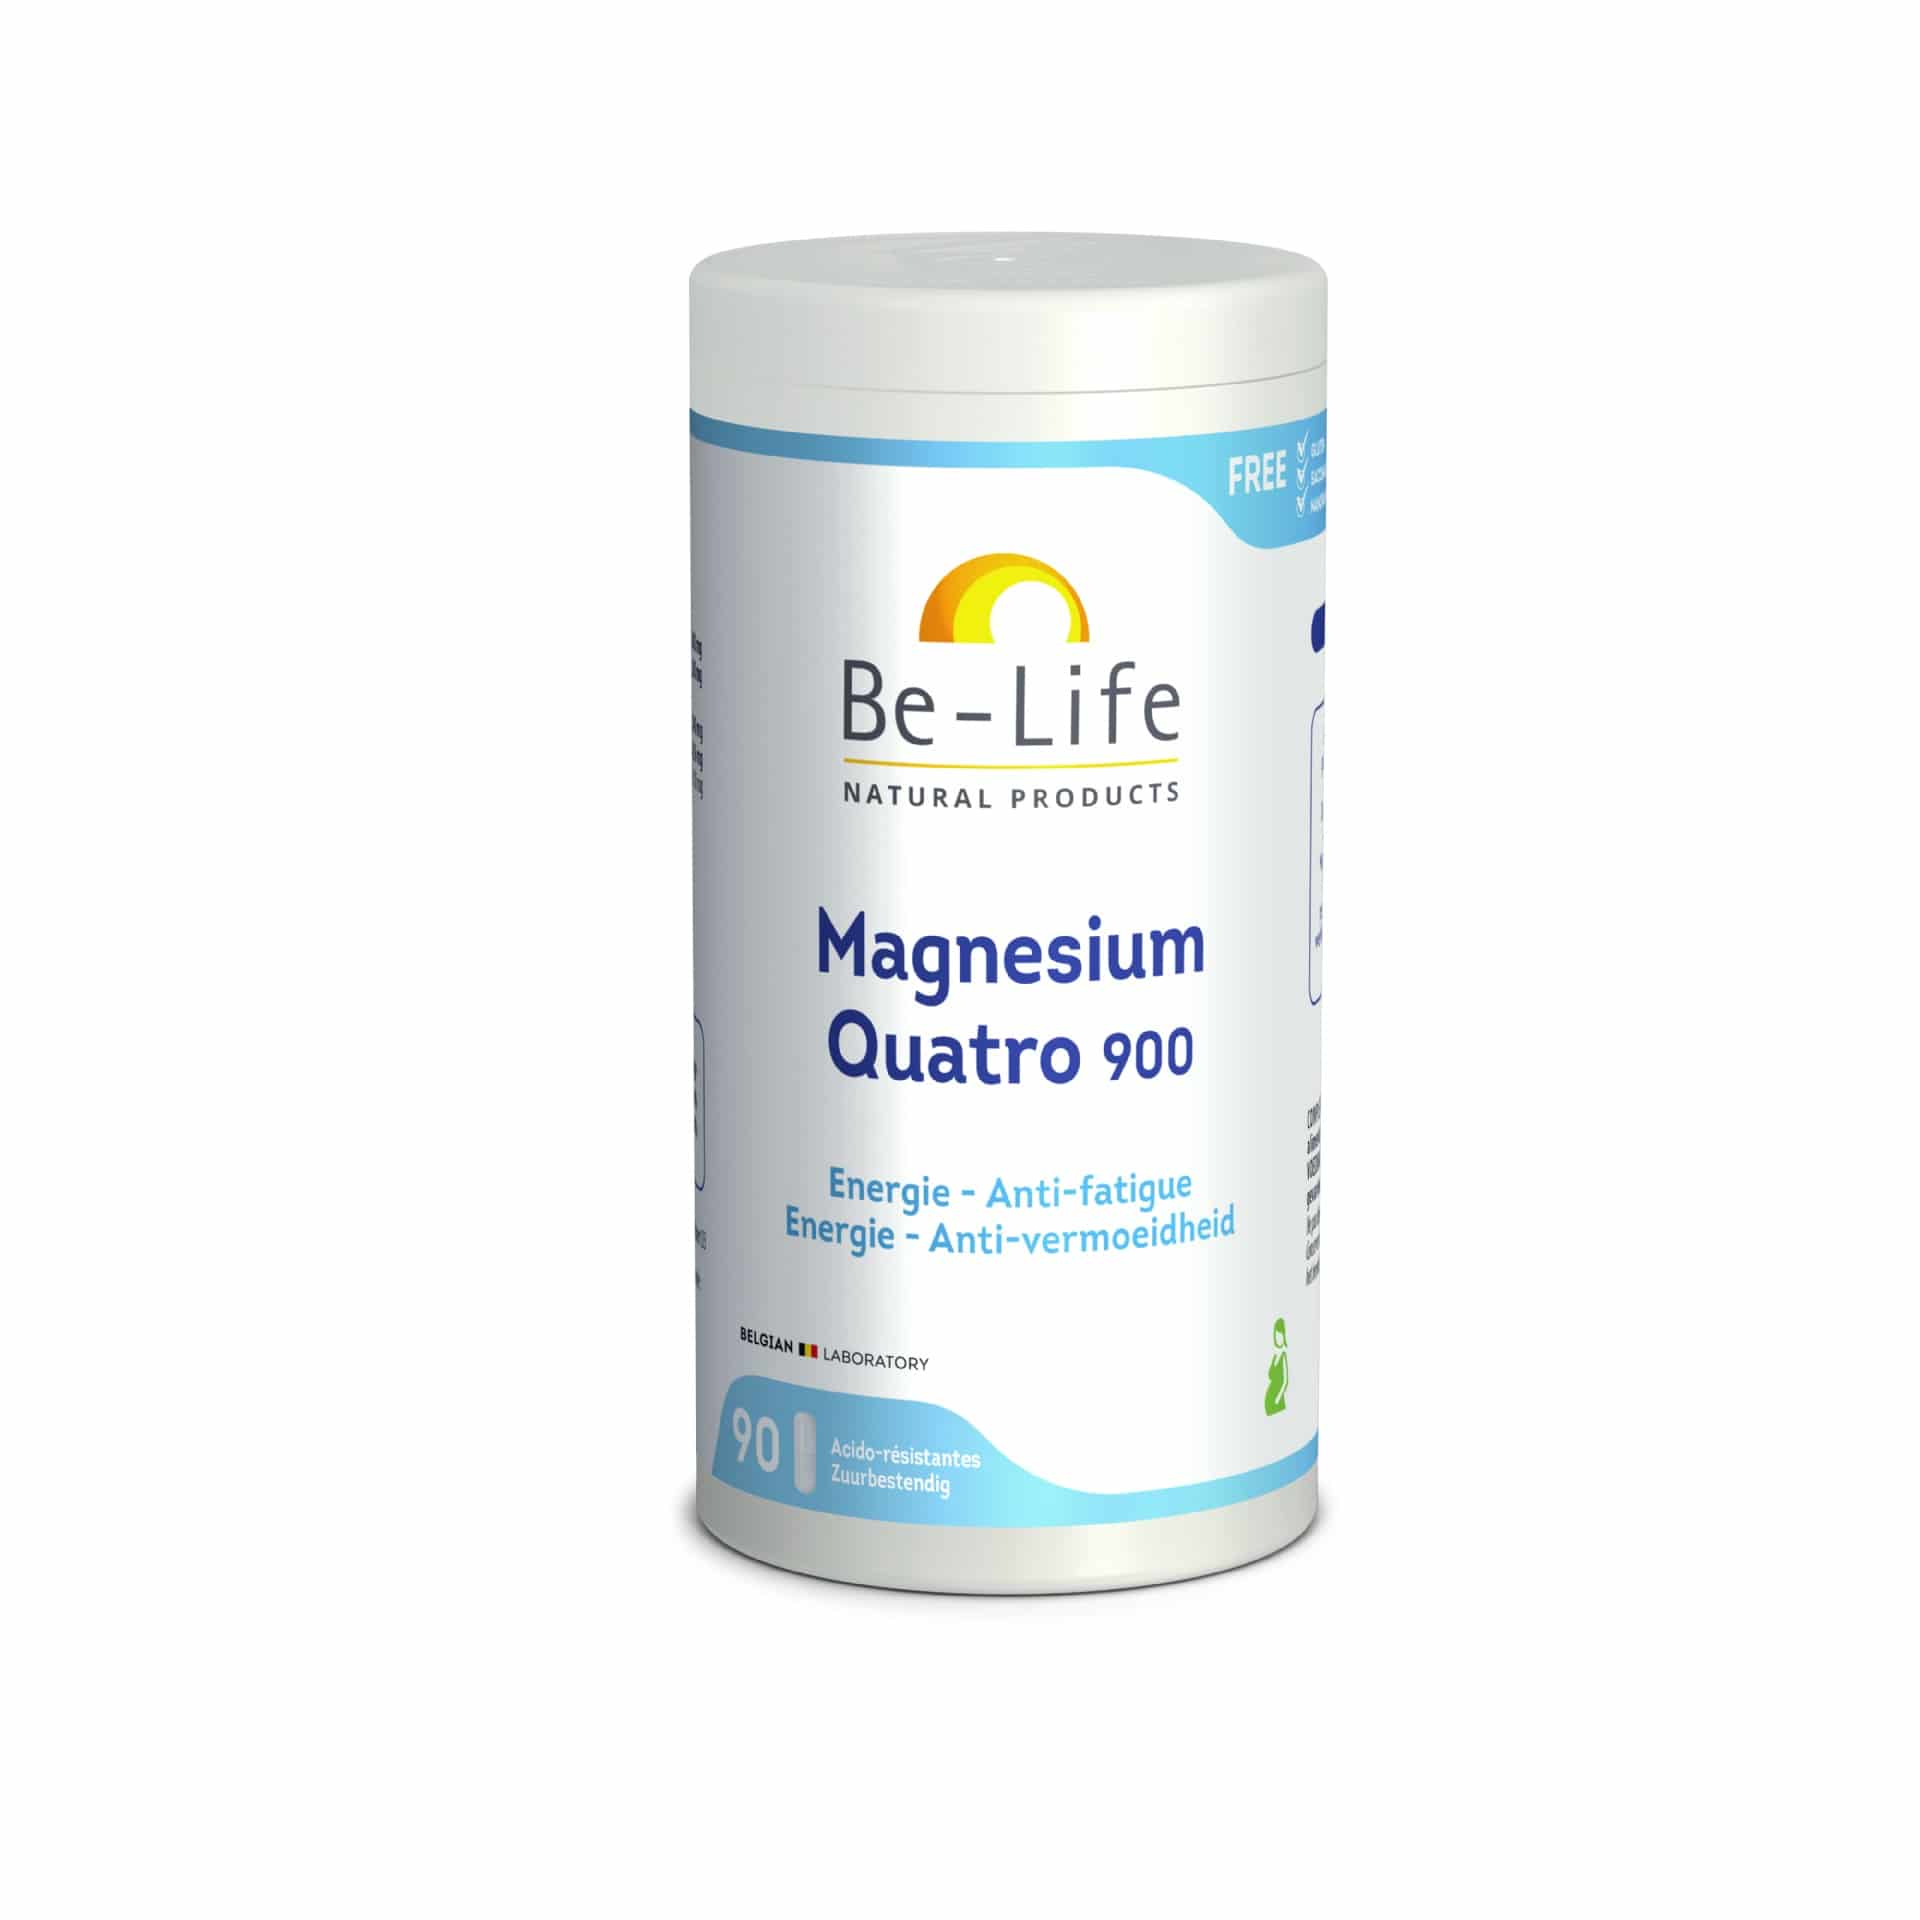 Be Life Magnesium Quatro 900